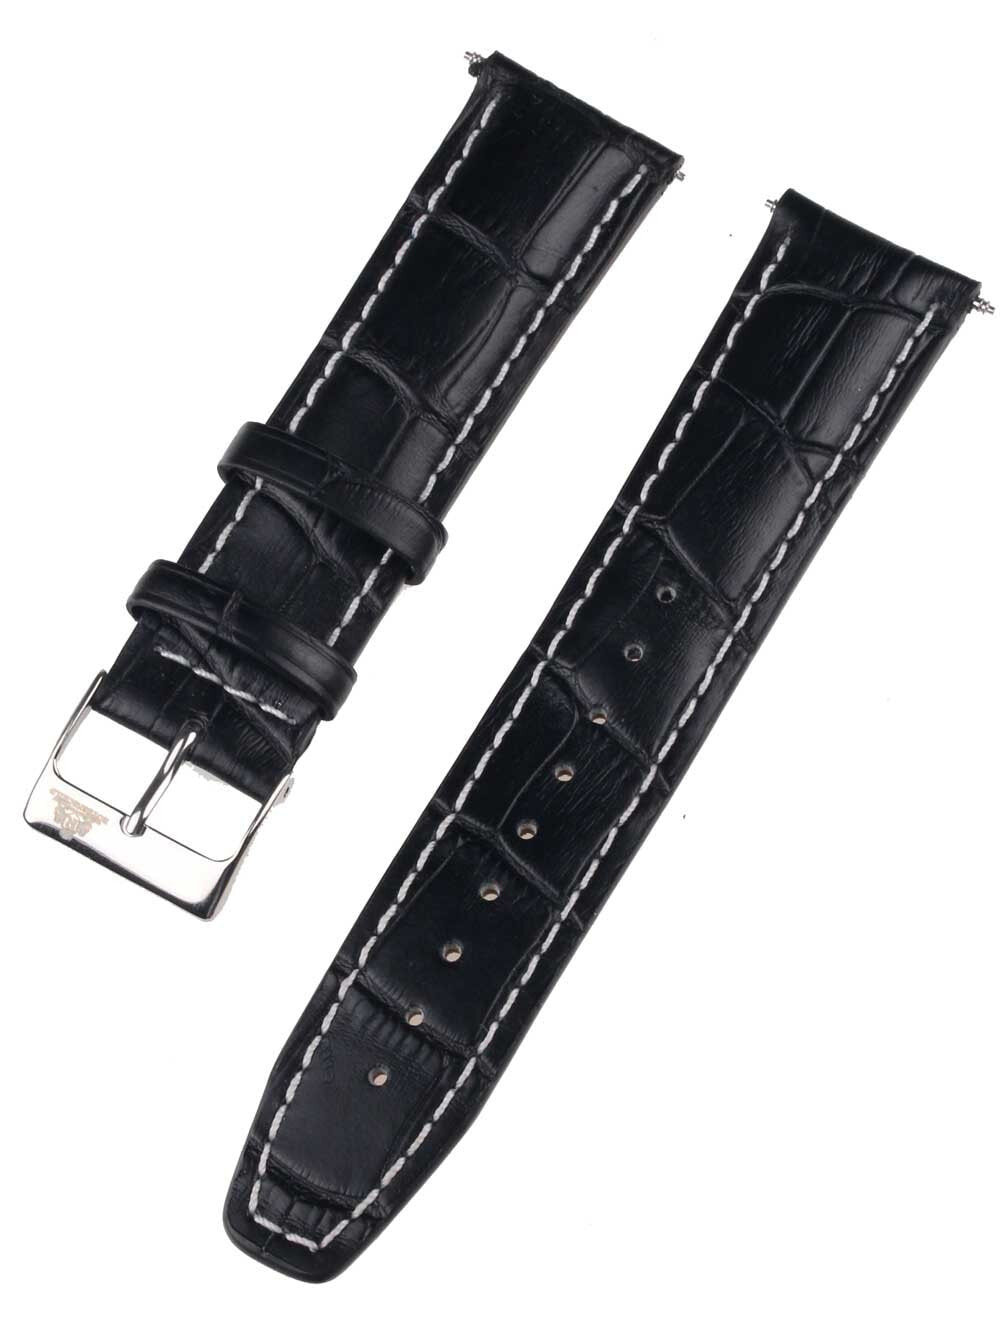 Ремешок или браслет для часов Rothenschild mid-17756 Universal Strap 22mm Black, Silver buckle